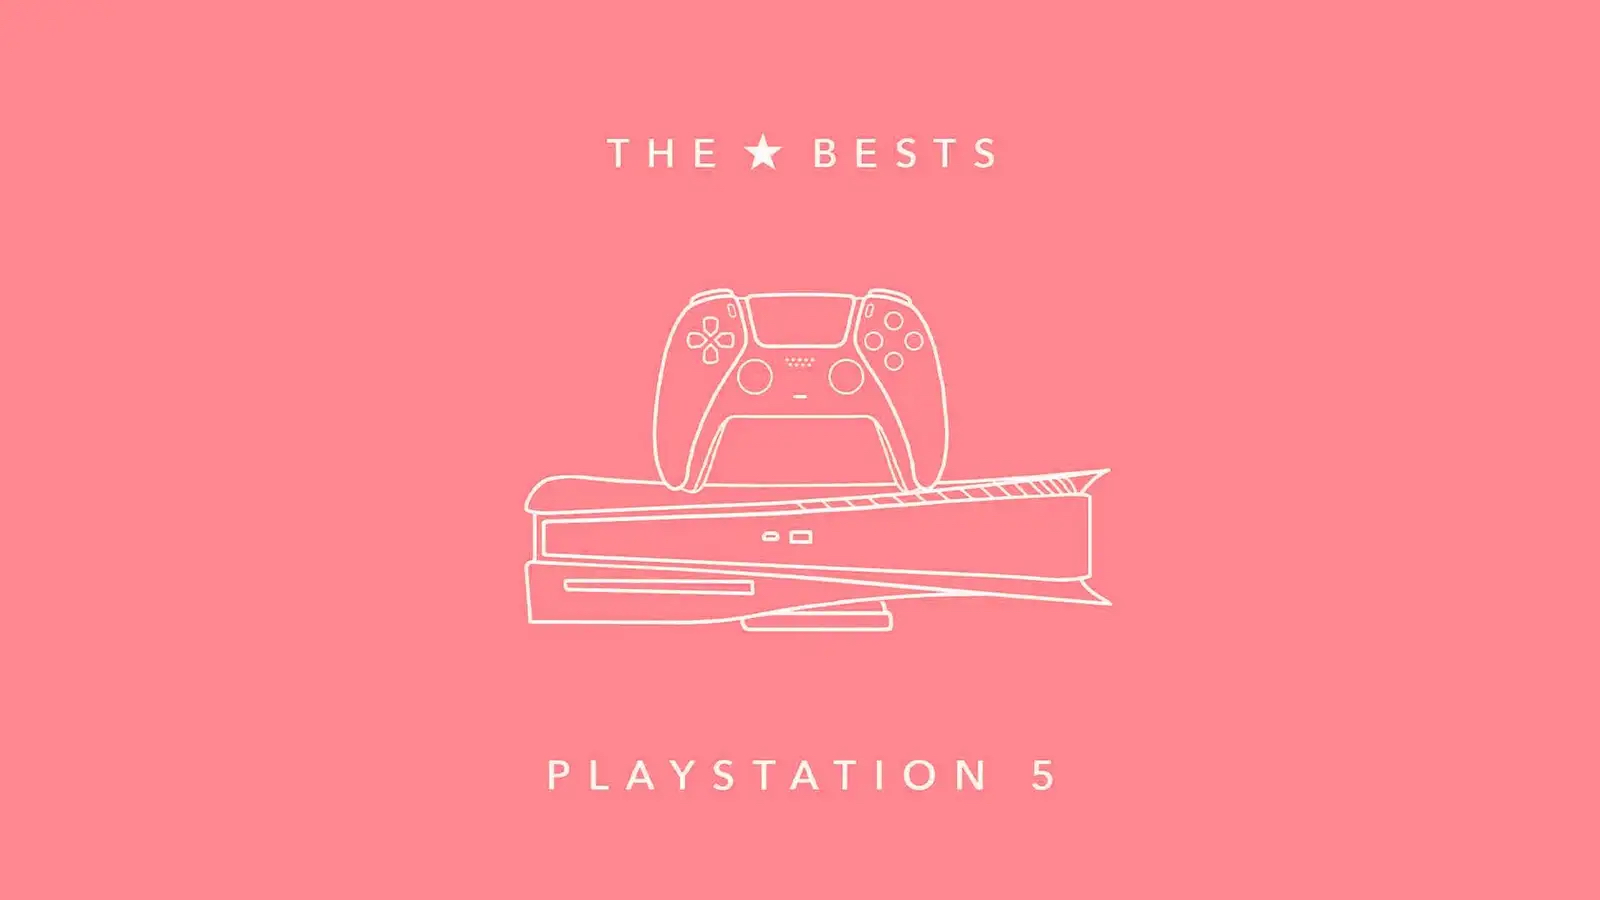 PS5 Games - Buy Top New PlayStation 5 Games - JB Hi-Fi